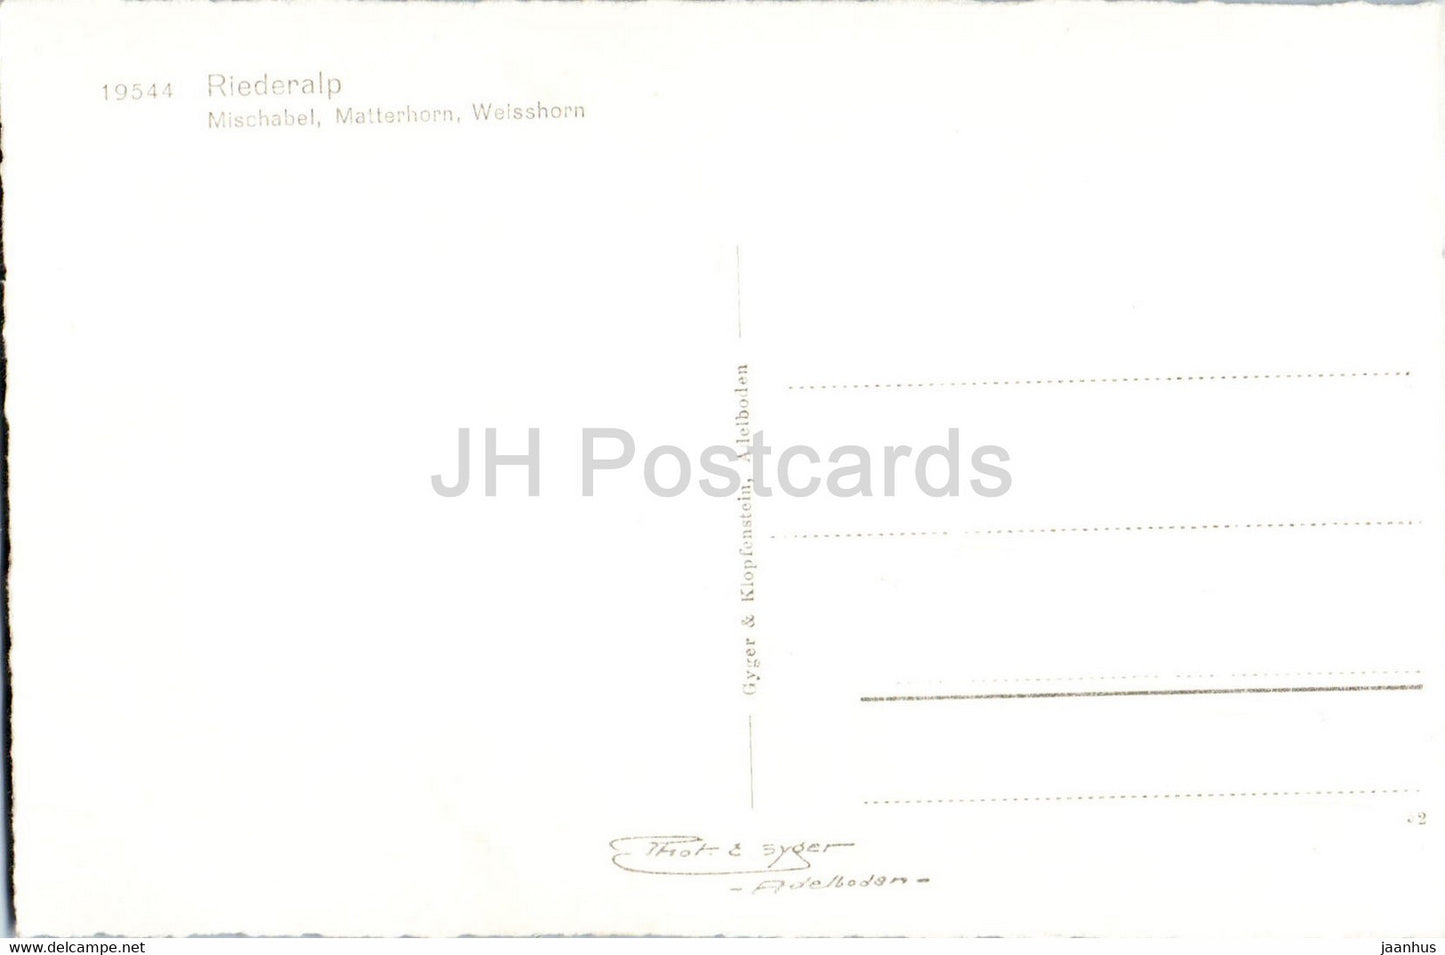 Riederalp - Mischabel - Cervin - Weisshorn - 19544 - carte postale ancienne - Suisse - inutilisée